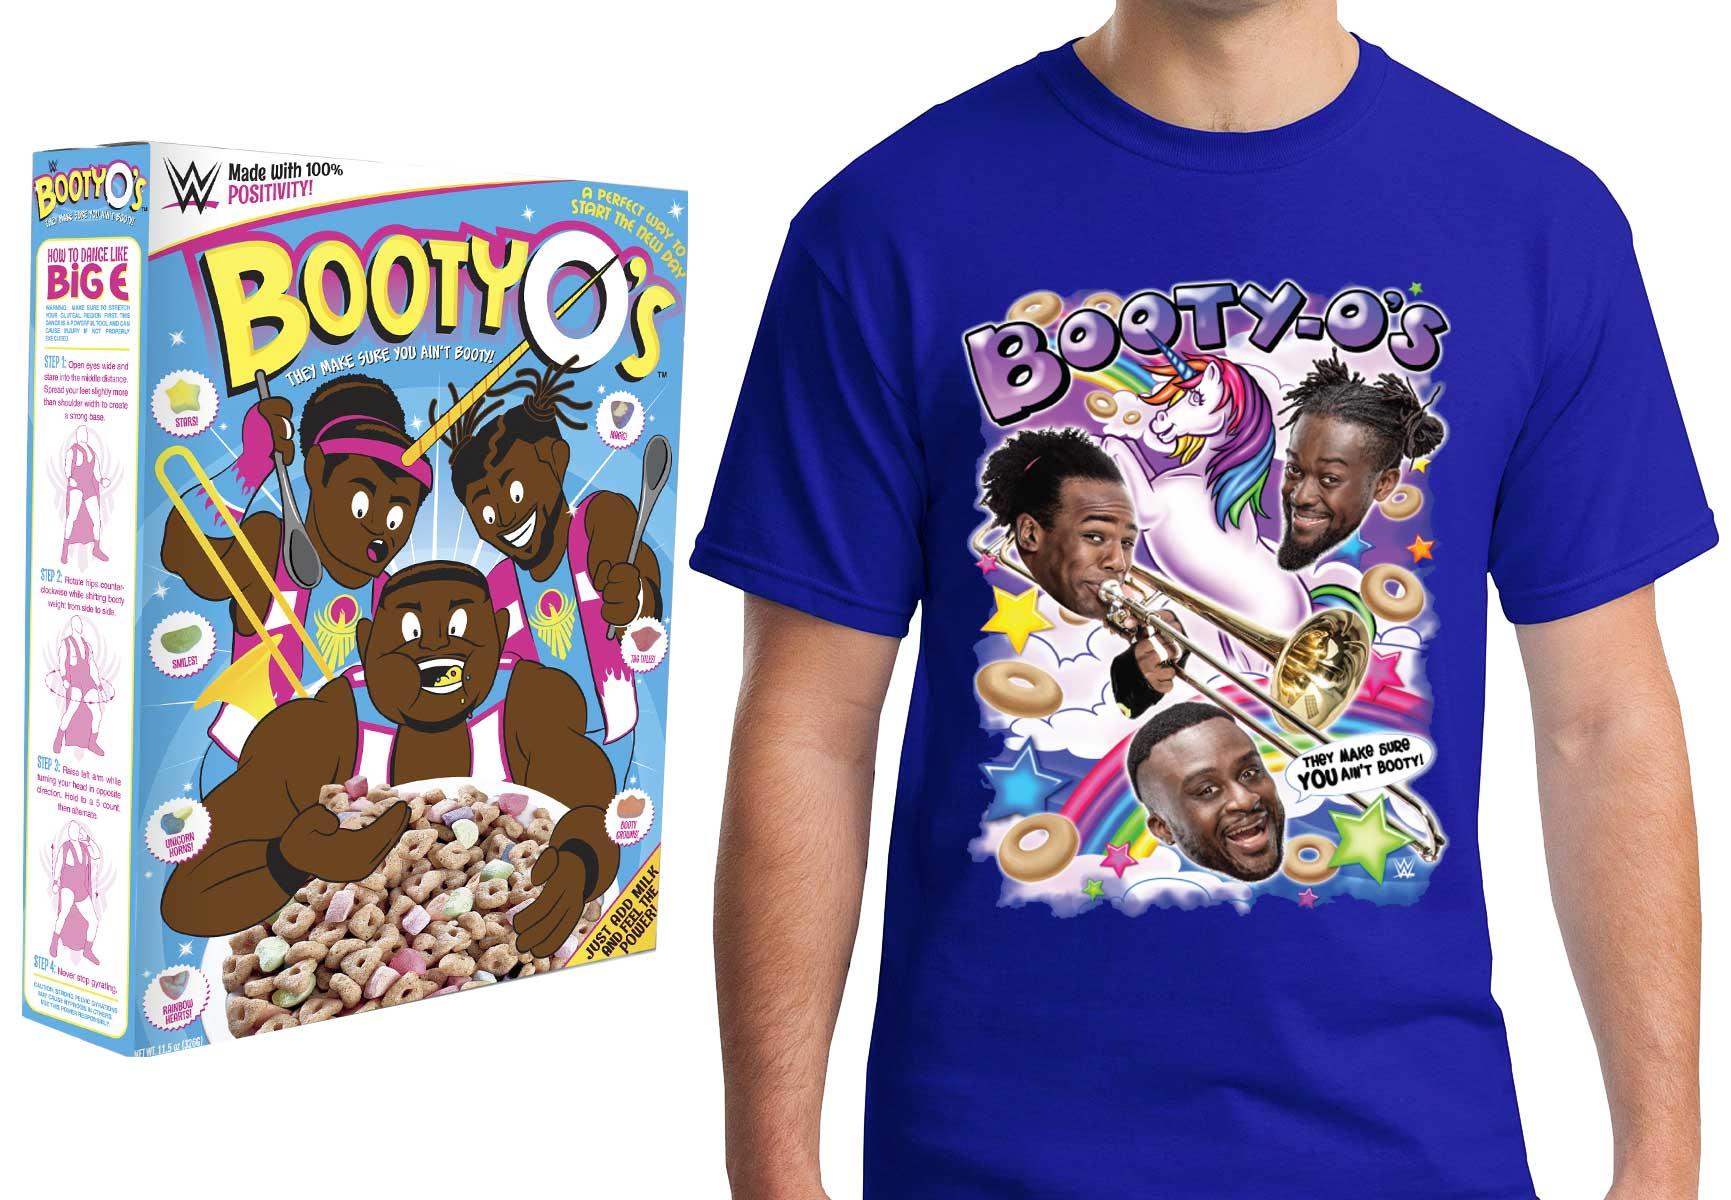 WWE New Day Booty O's cereal and t-shirt F.Y.E